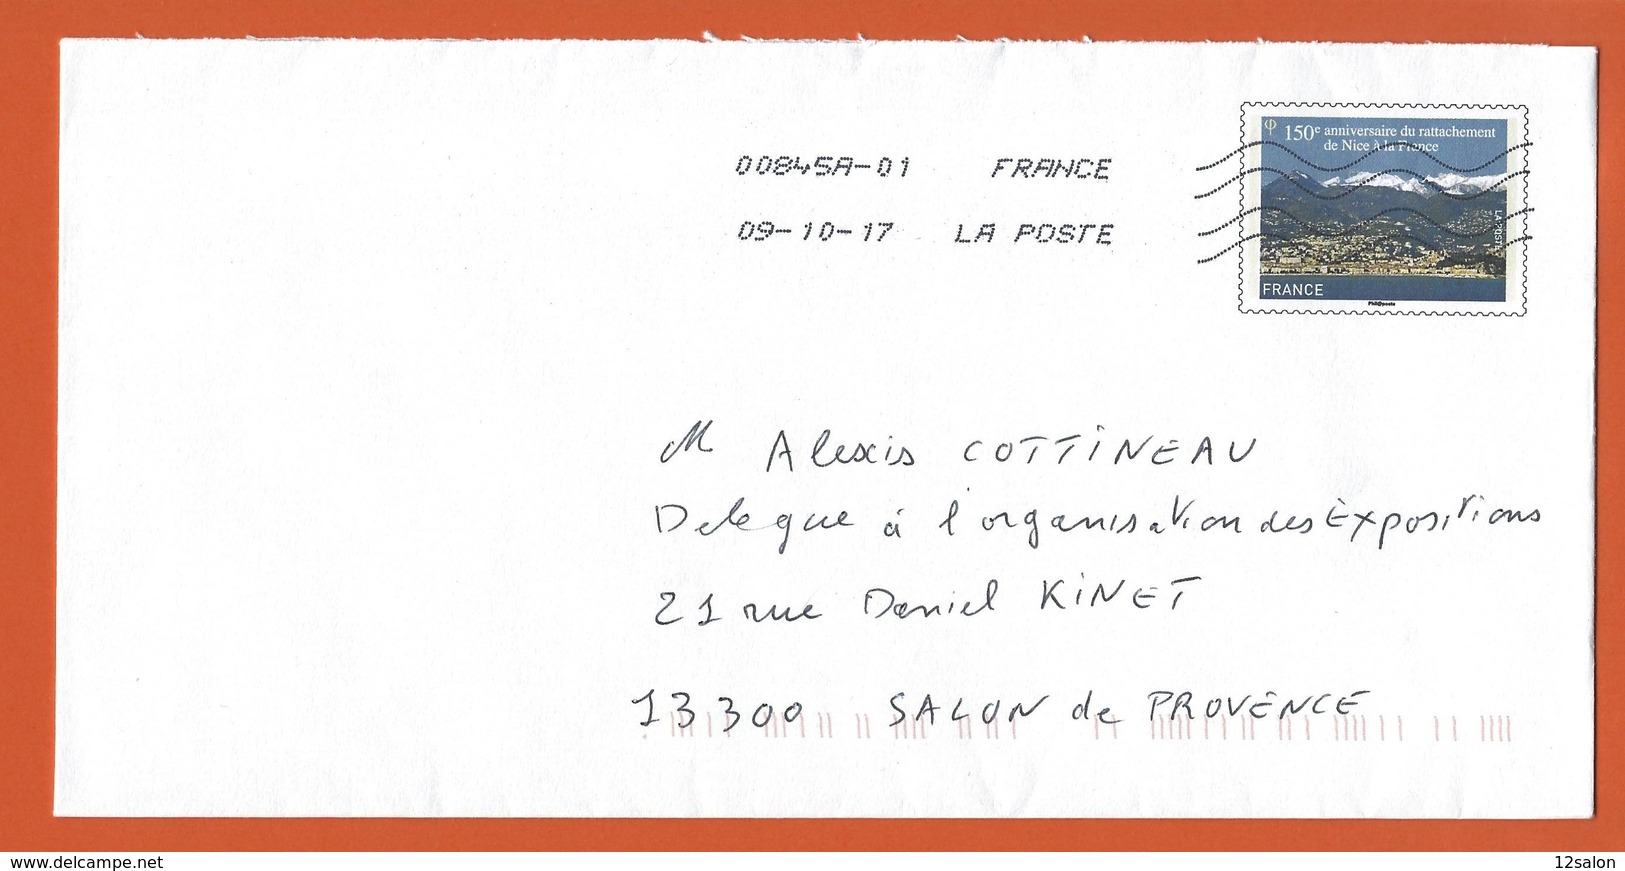 ENTIERS POSTAUX PRET A POSTER  Theme 150 ANNIVERSAIRE RATTACHEMENT DE NICE A LA FRANCE - Prêts-à-poster: Other (1995-...)